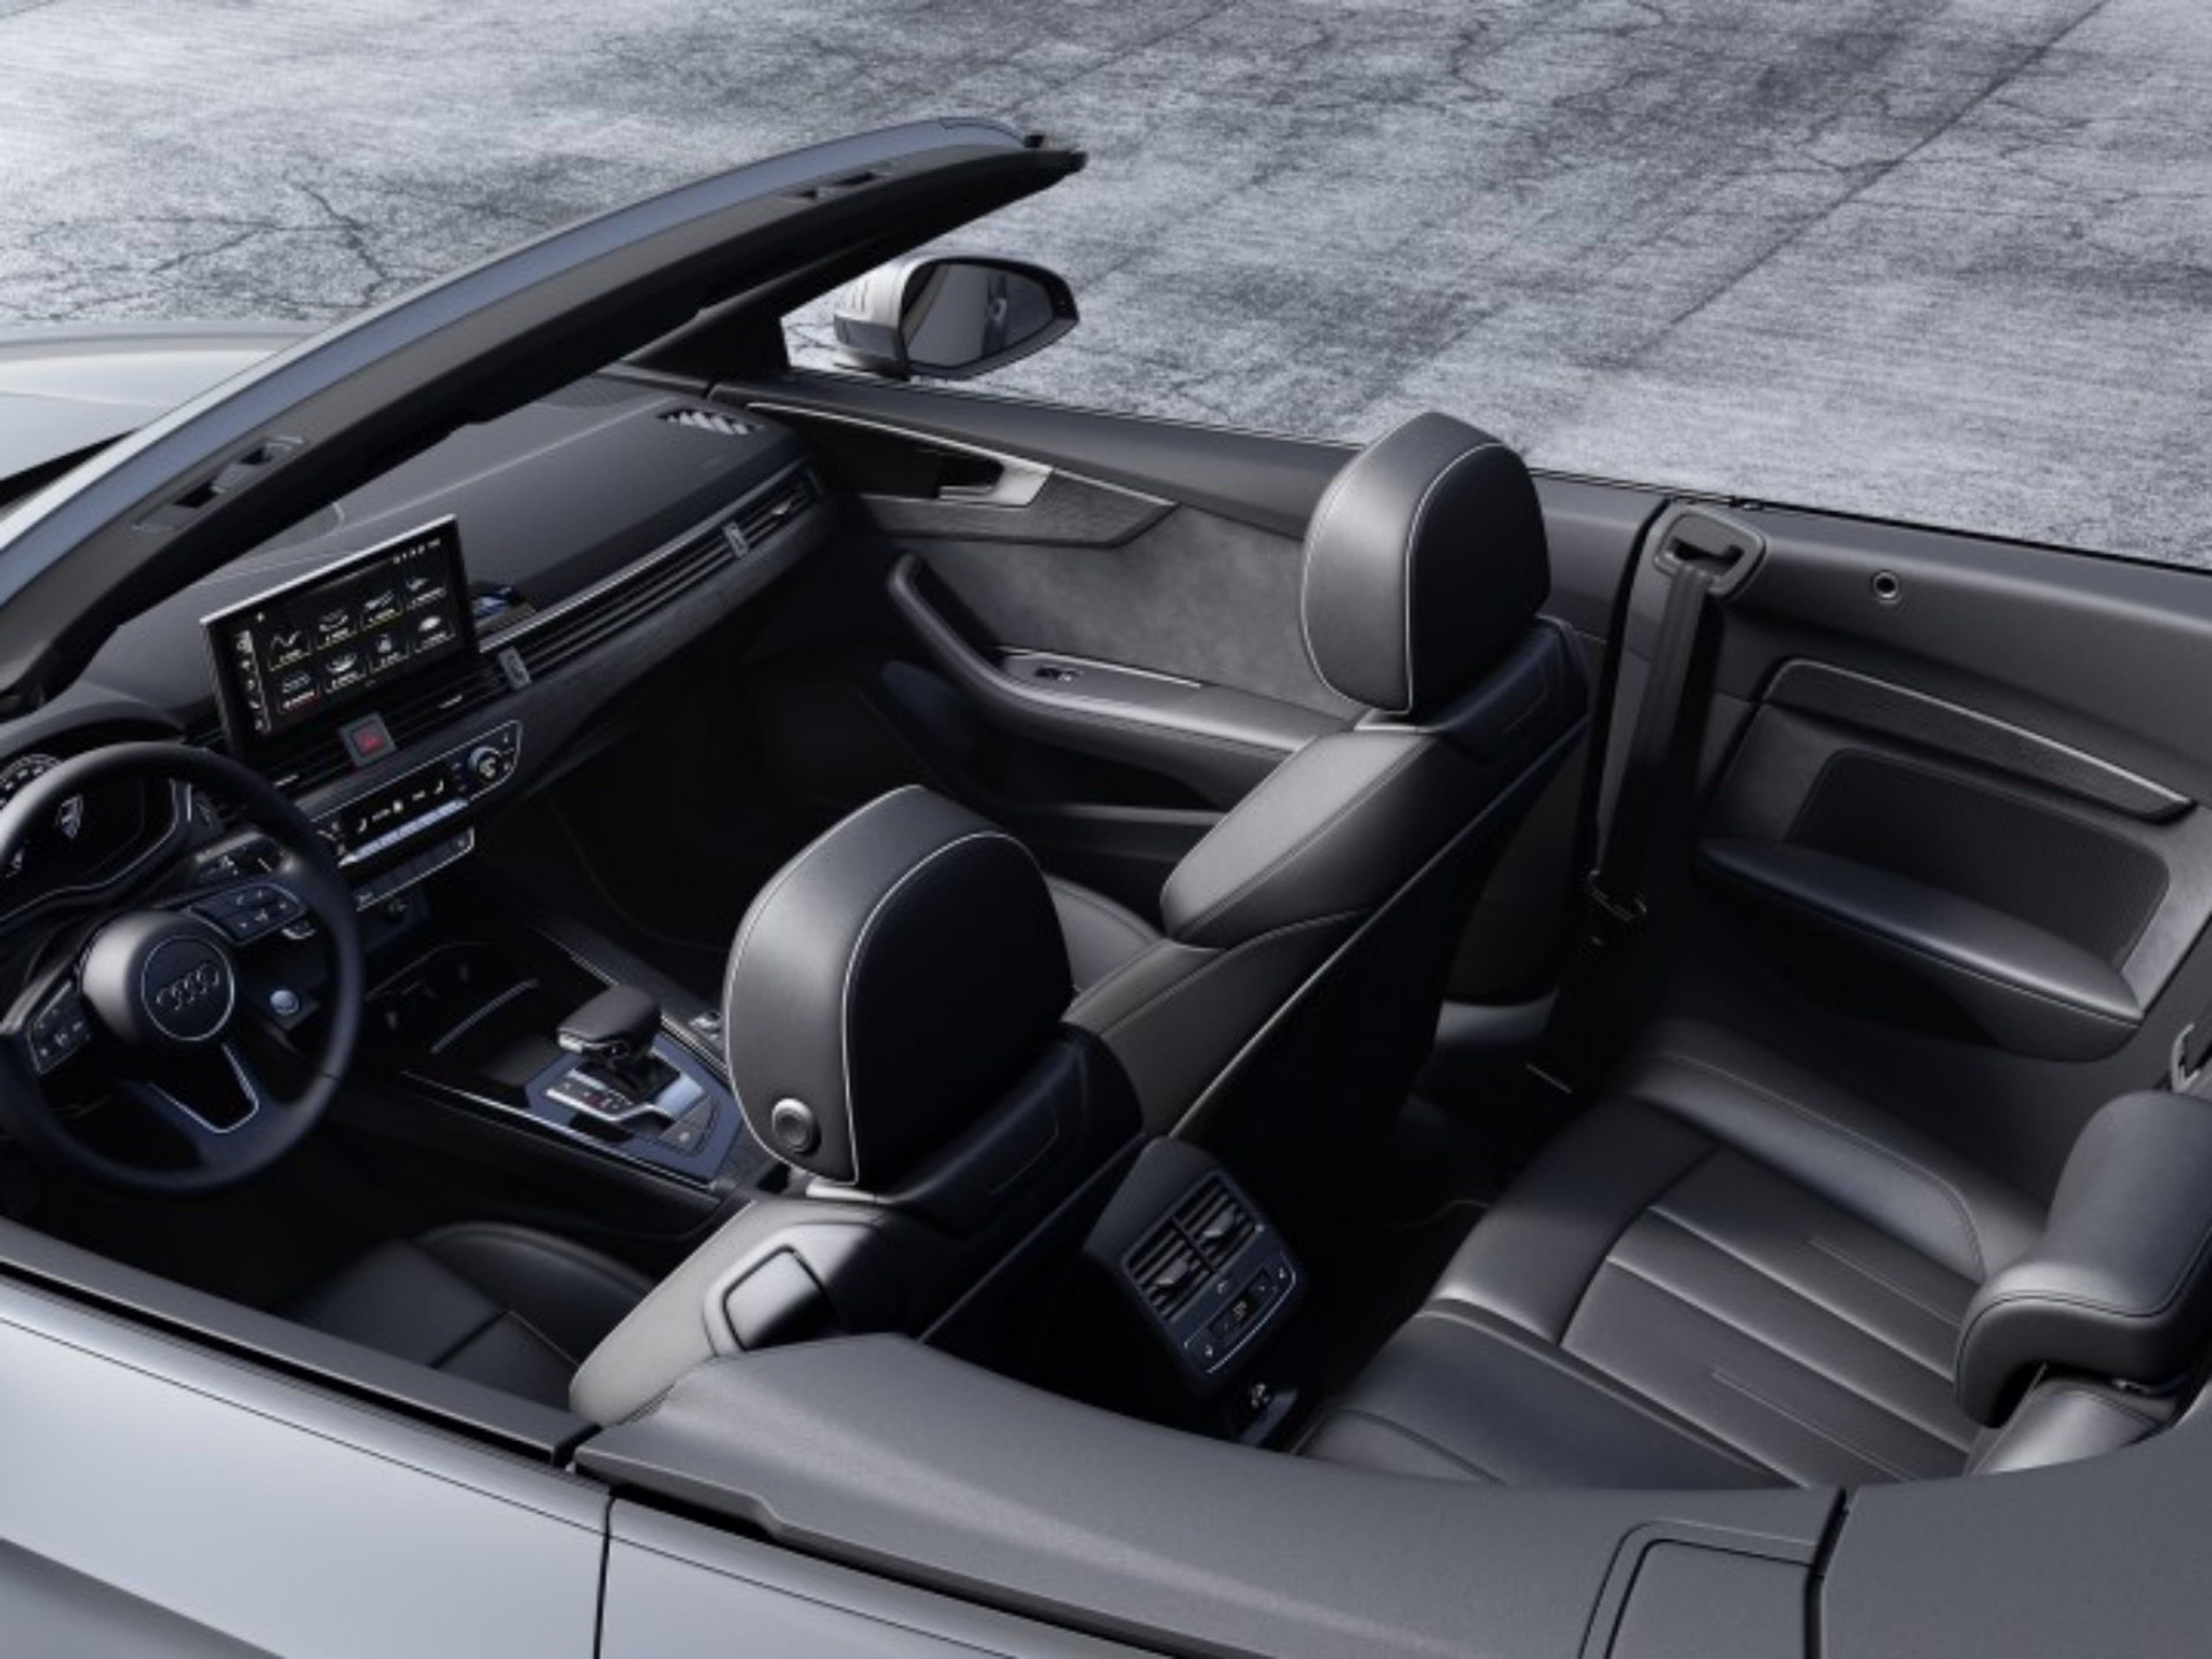 Audi A5 Cabrio interior cenital